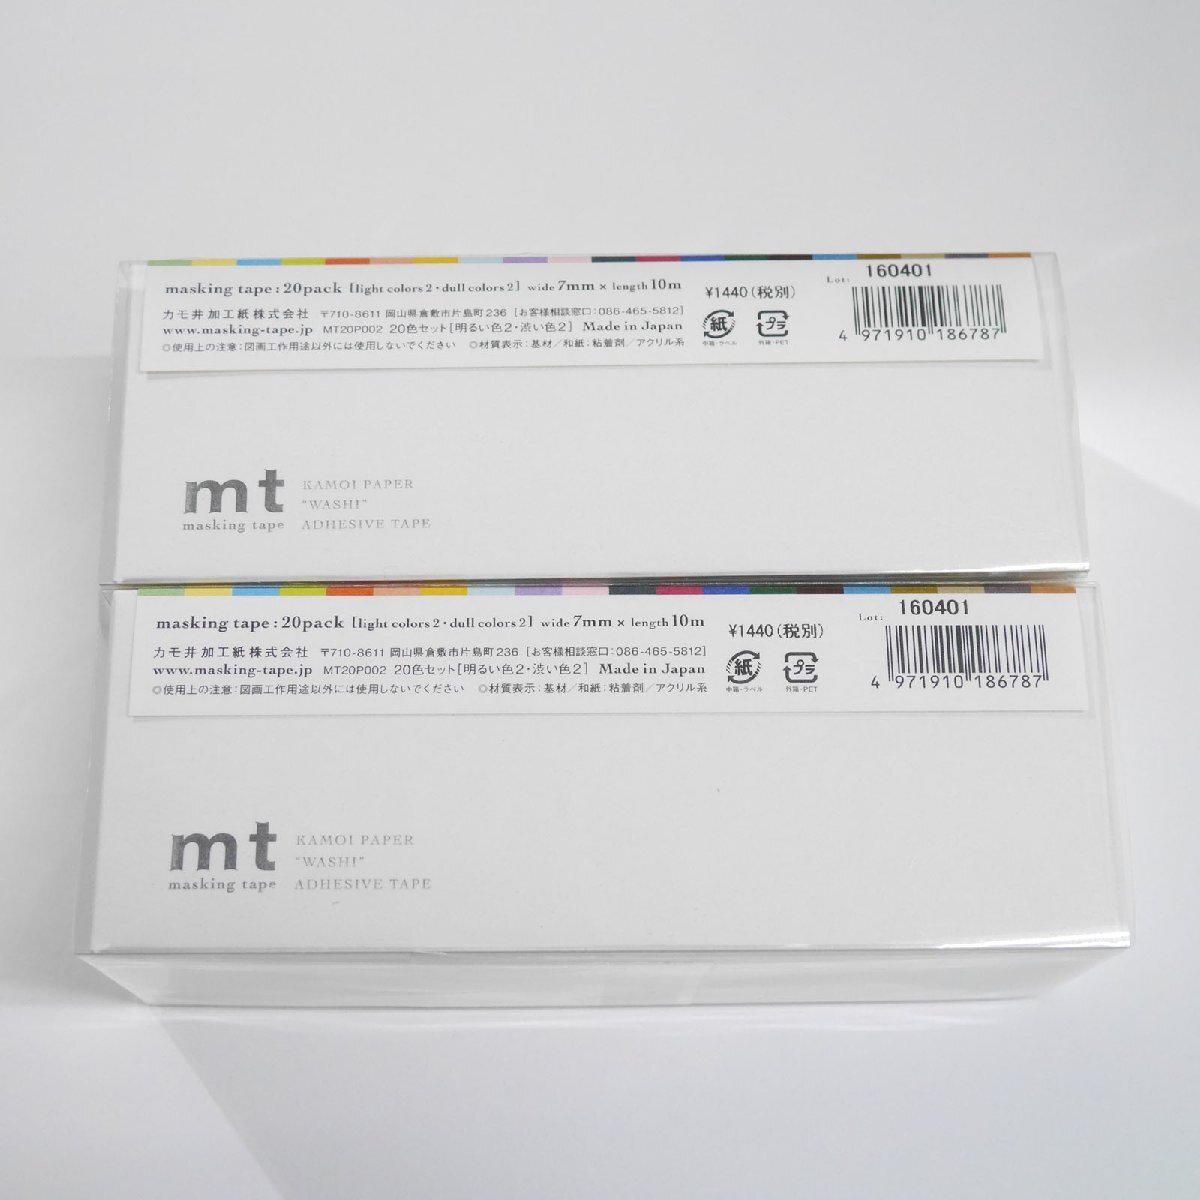 カモ井加工紙 マスキングテープ 計2箱(40本)セット MT20P002 送料無料の画像2